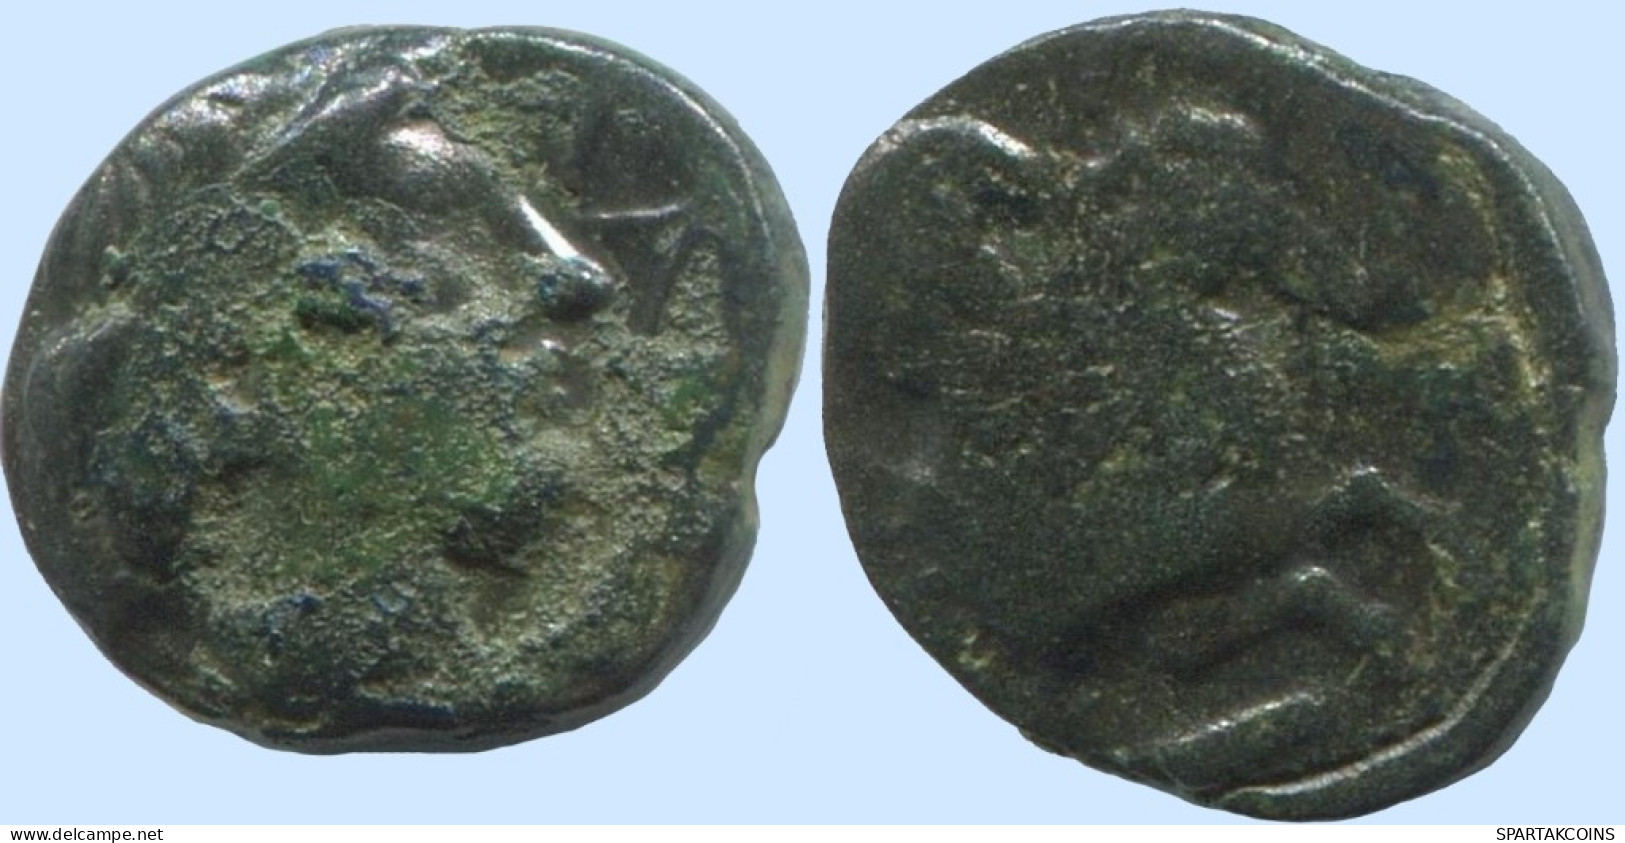 PEGASUS Antike Authentische Original GRIECHISCHE Münze 1.1g/9mm #ANT1670.10.D.A - Griechische Münzen